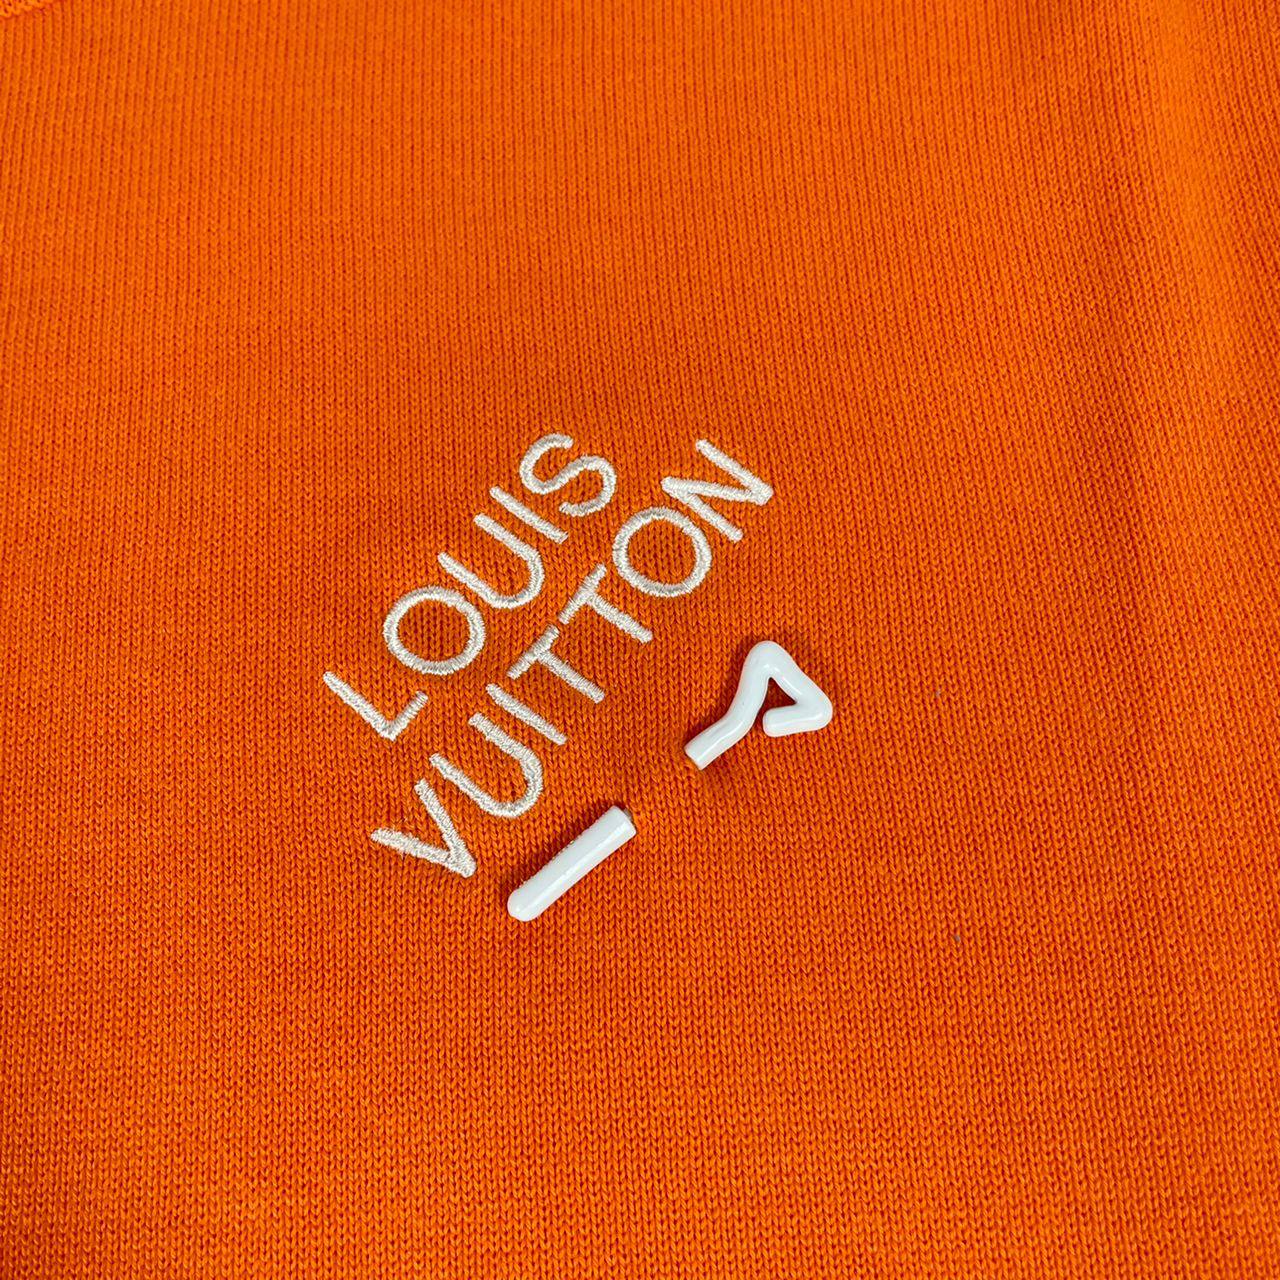 LOUIS VUITTON T-Shirt